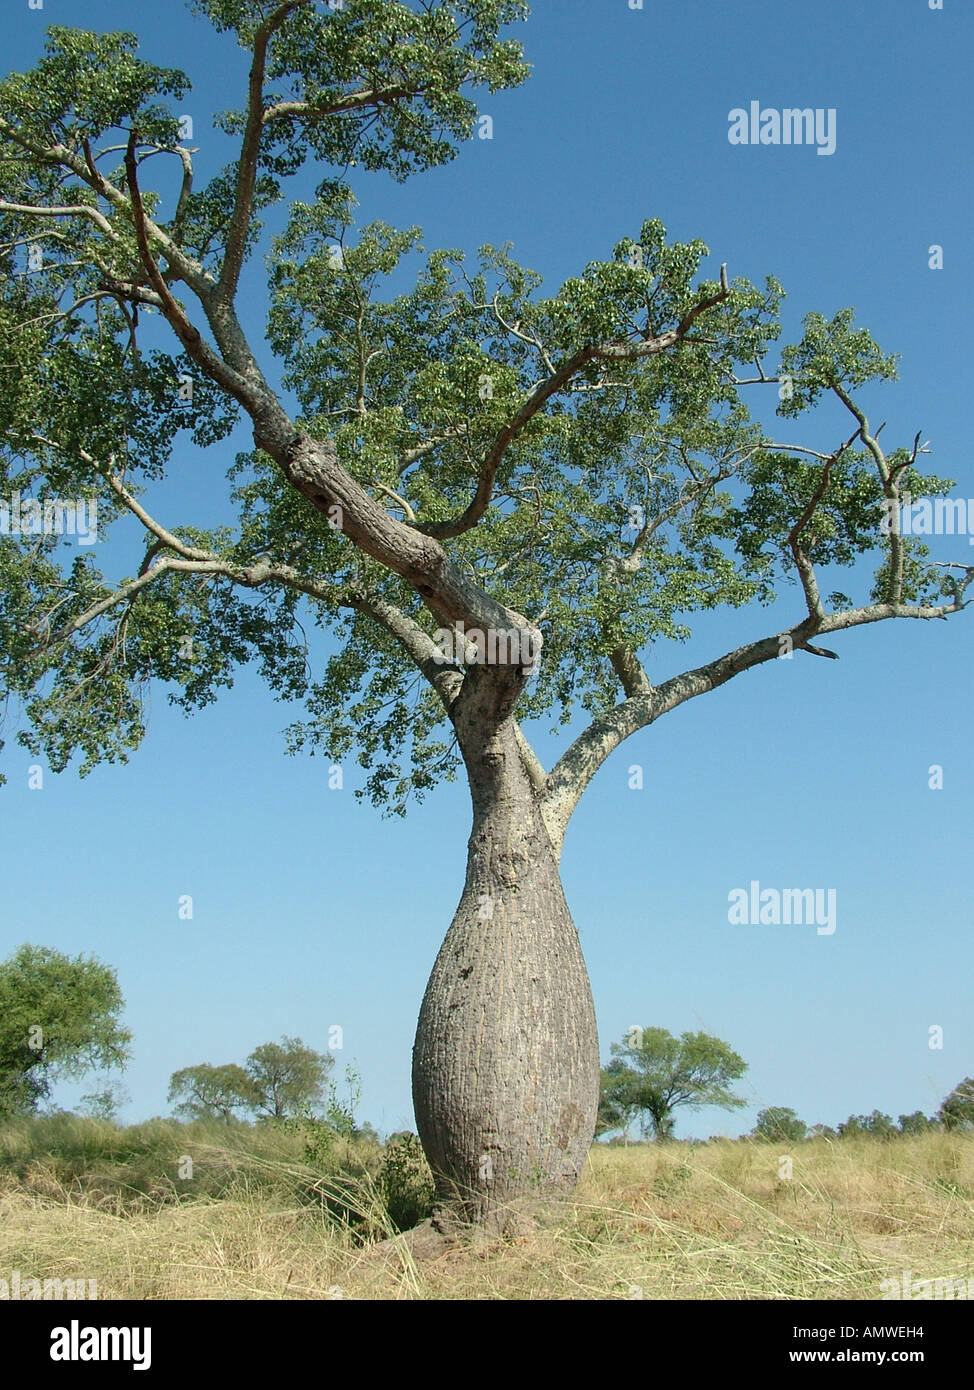 bottle tree (chorisia insignis) at a typical savannah, gran chaco